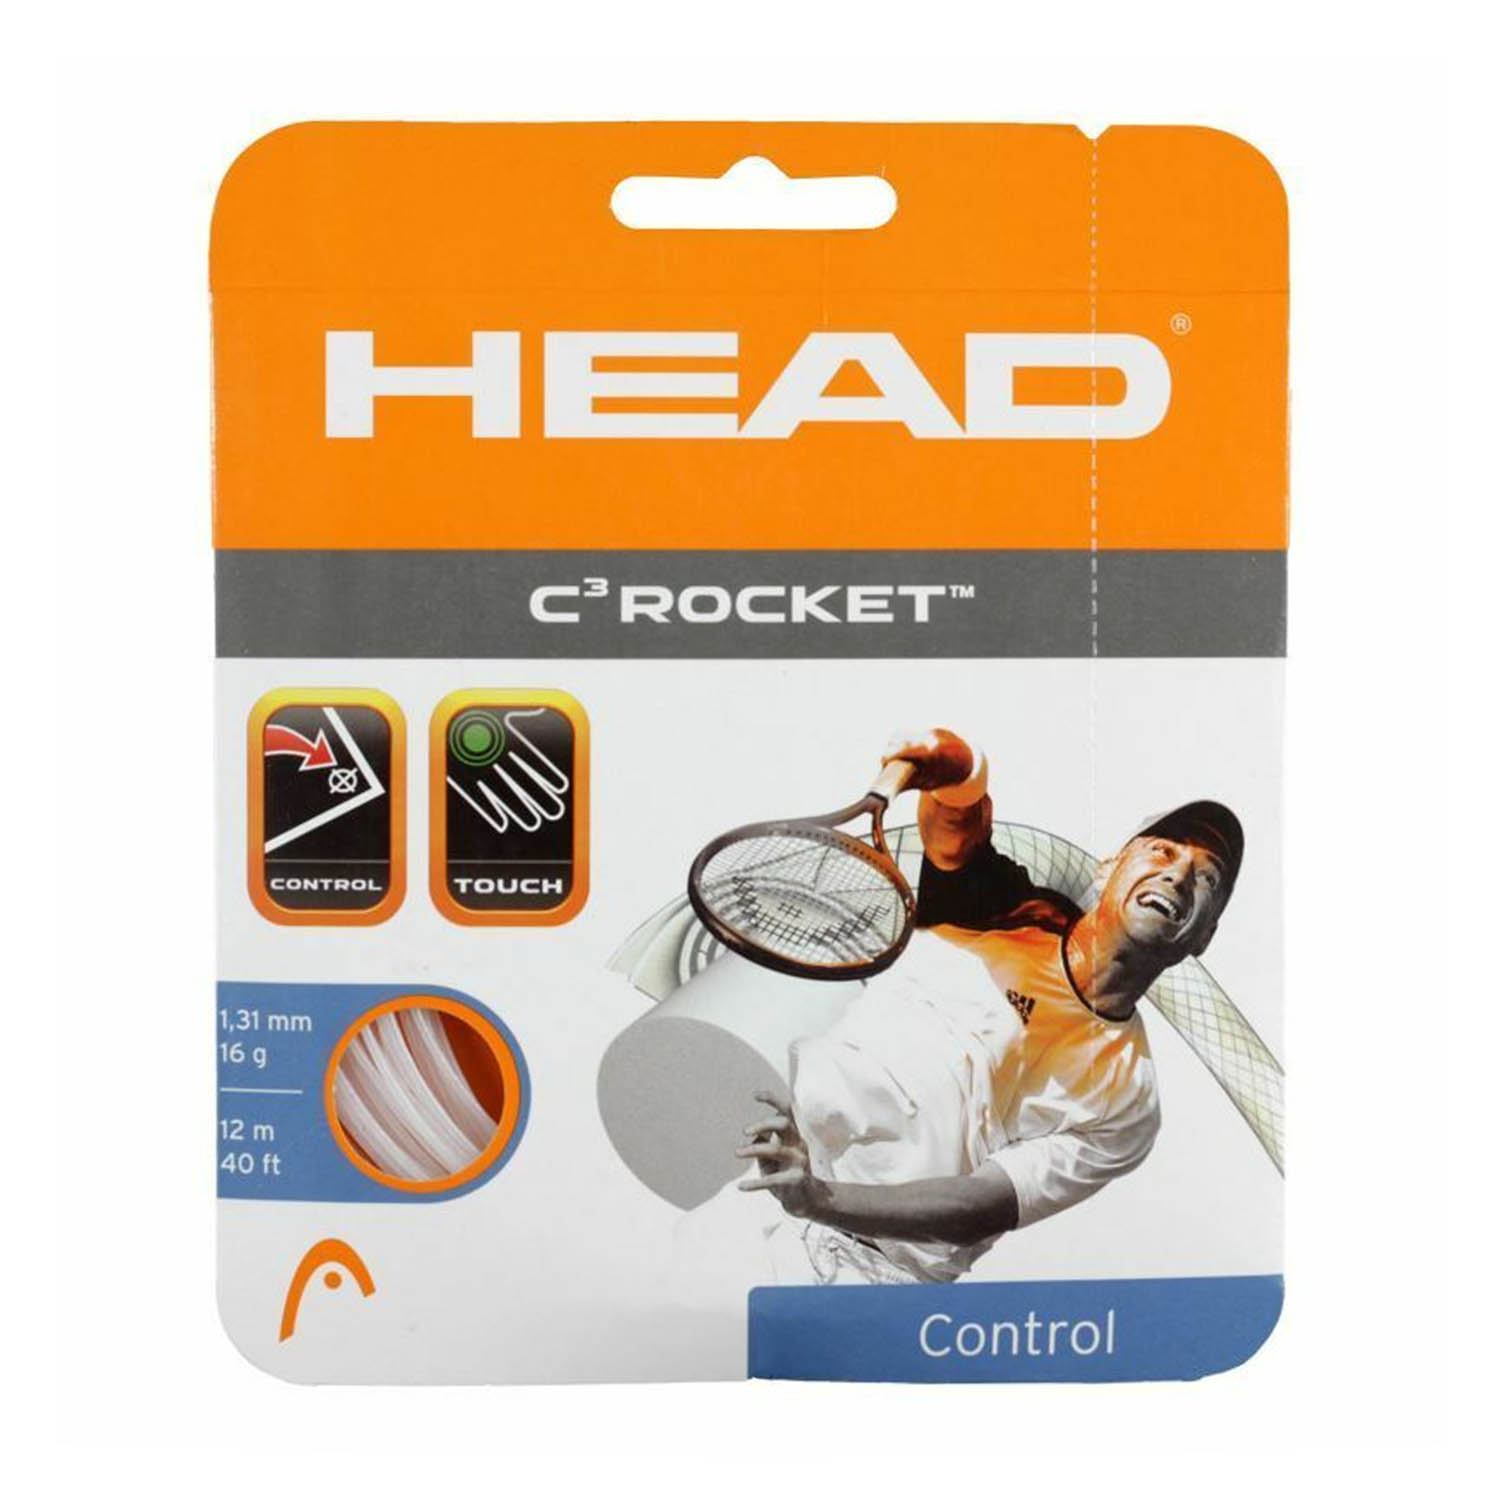 Head C3 Rocket 1.24 Set 12 m - White